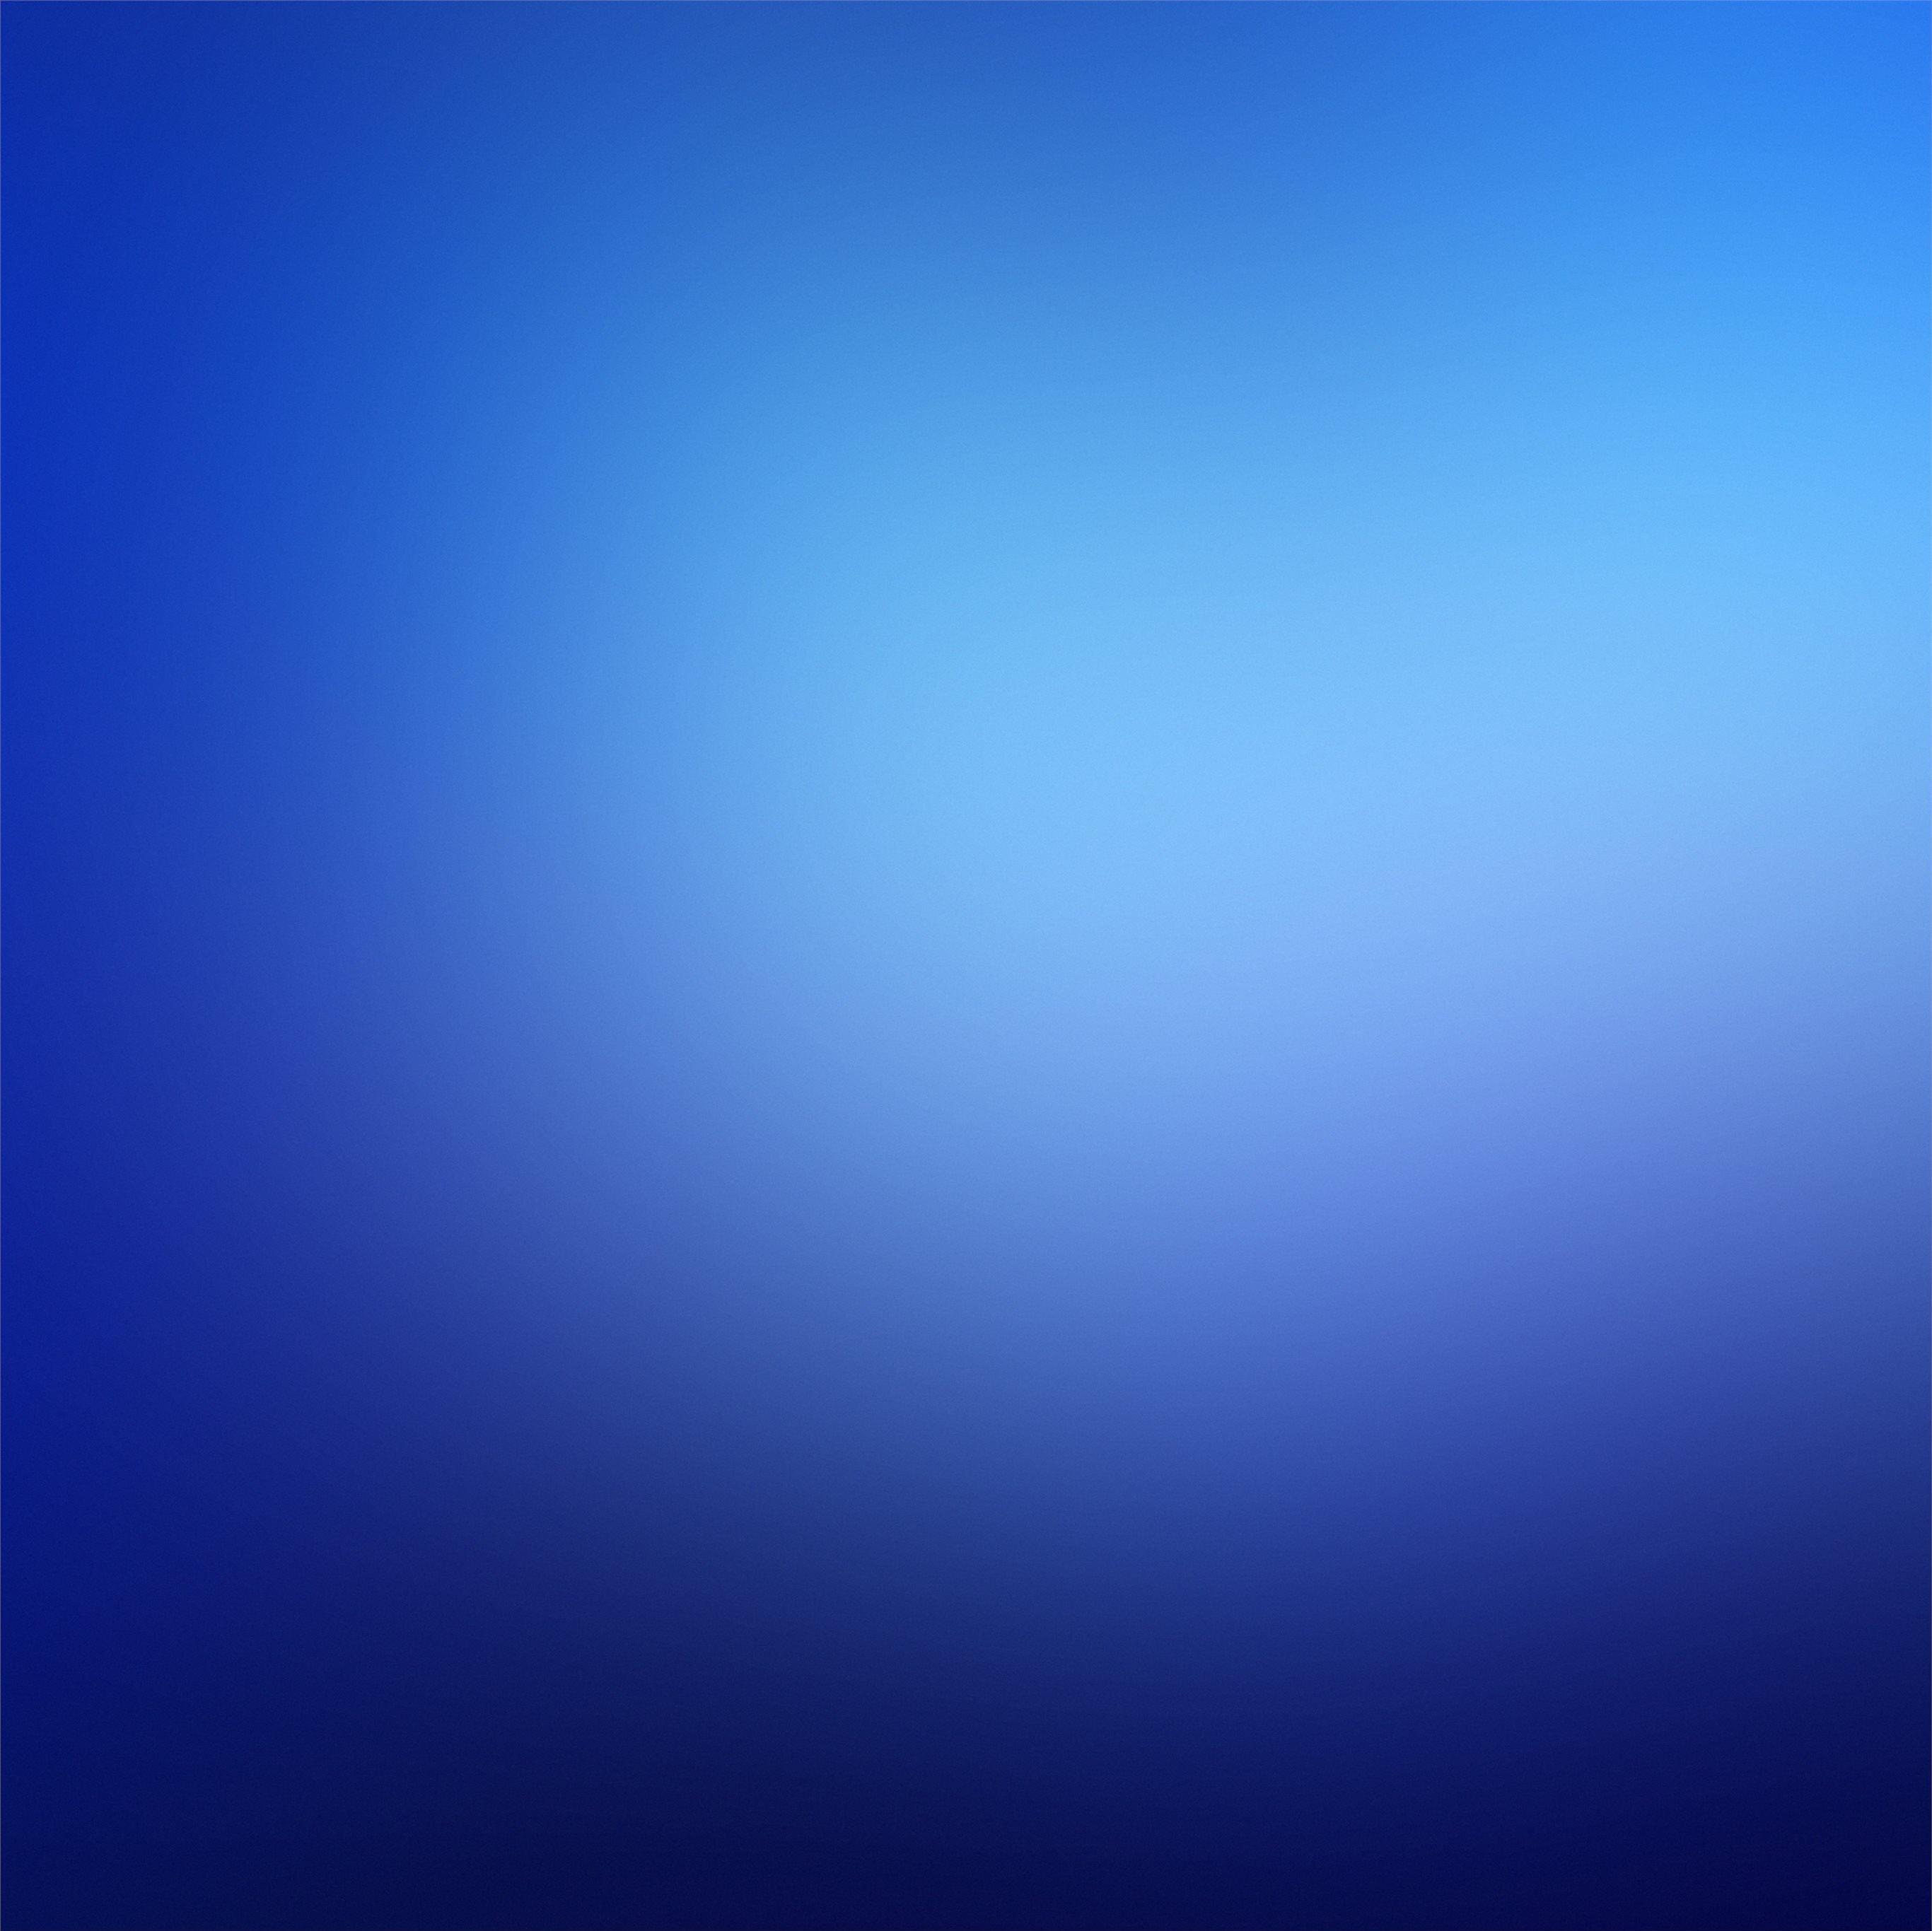 blue blur minimal 5k iPad Pro Wallpapers Free Download